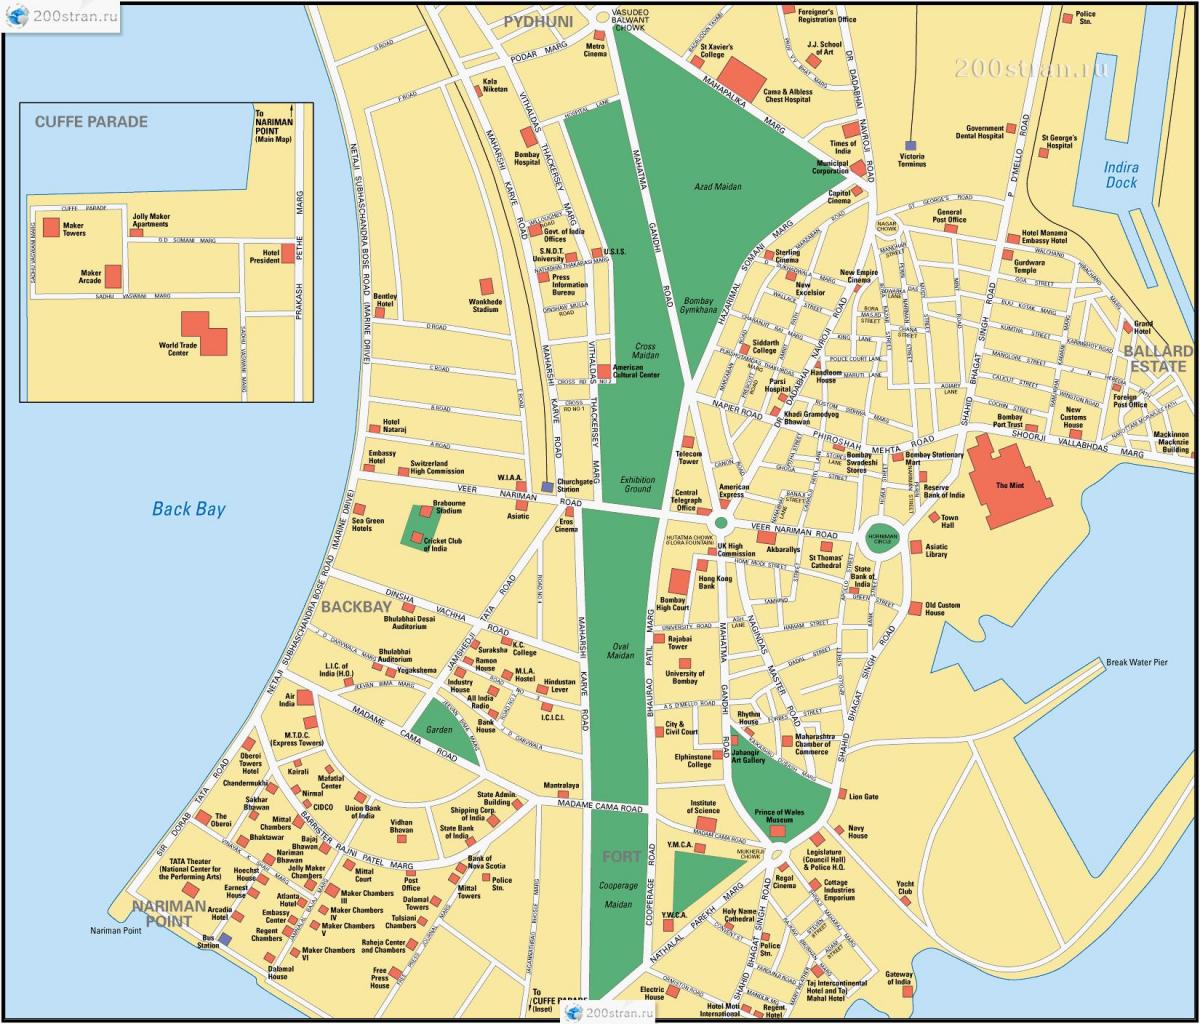 مومباي - خريطة شوارع بومباي